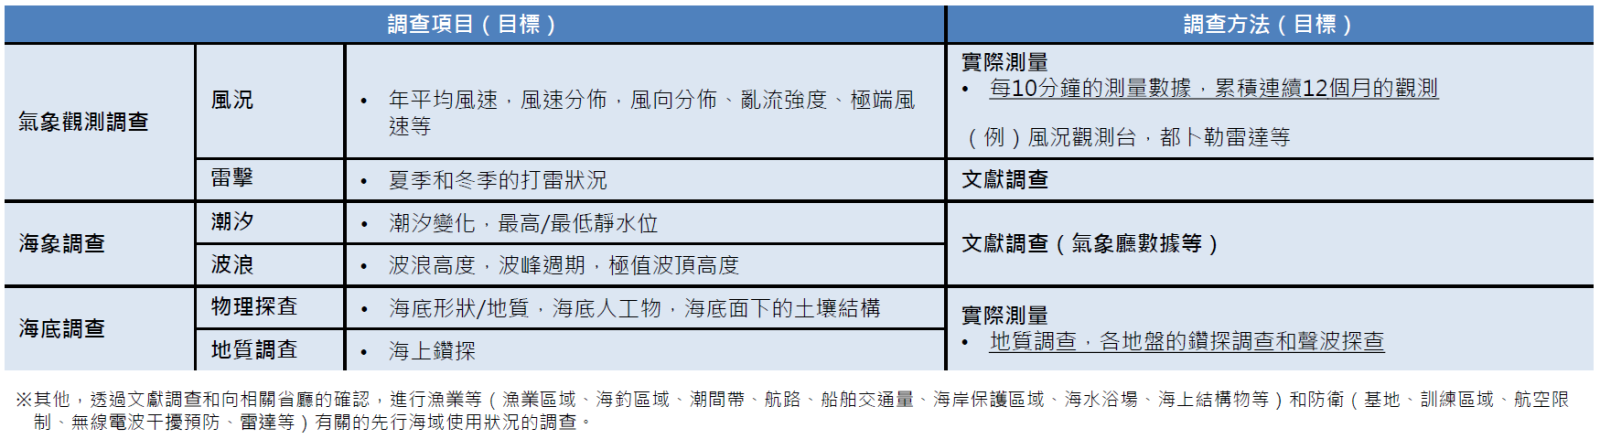 日本離岸風電的調查項目和調查方法(詳如上文所述)